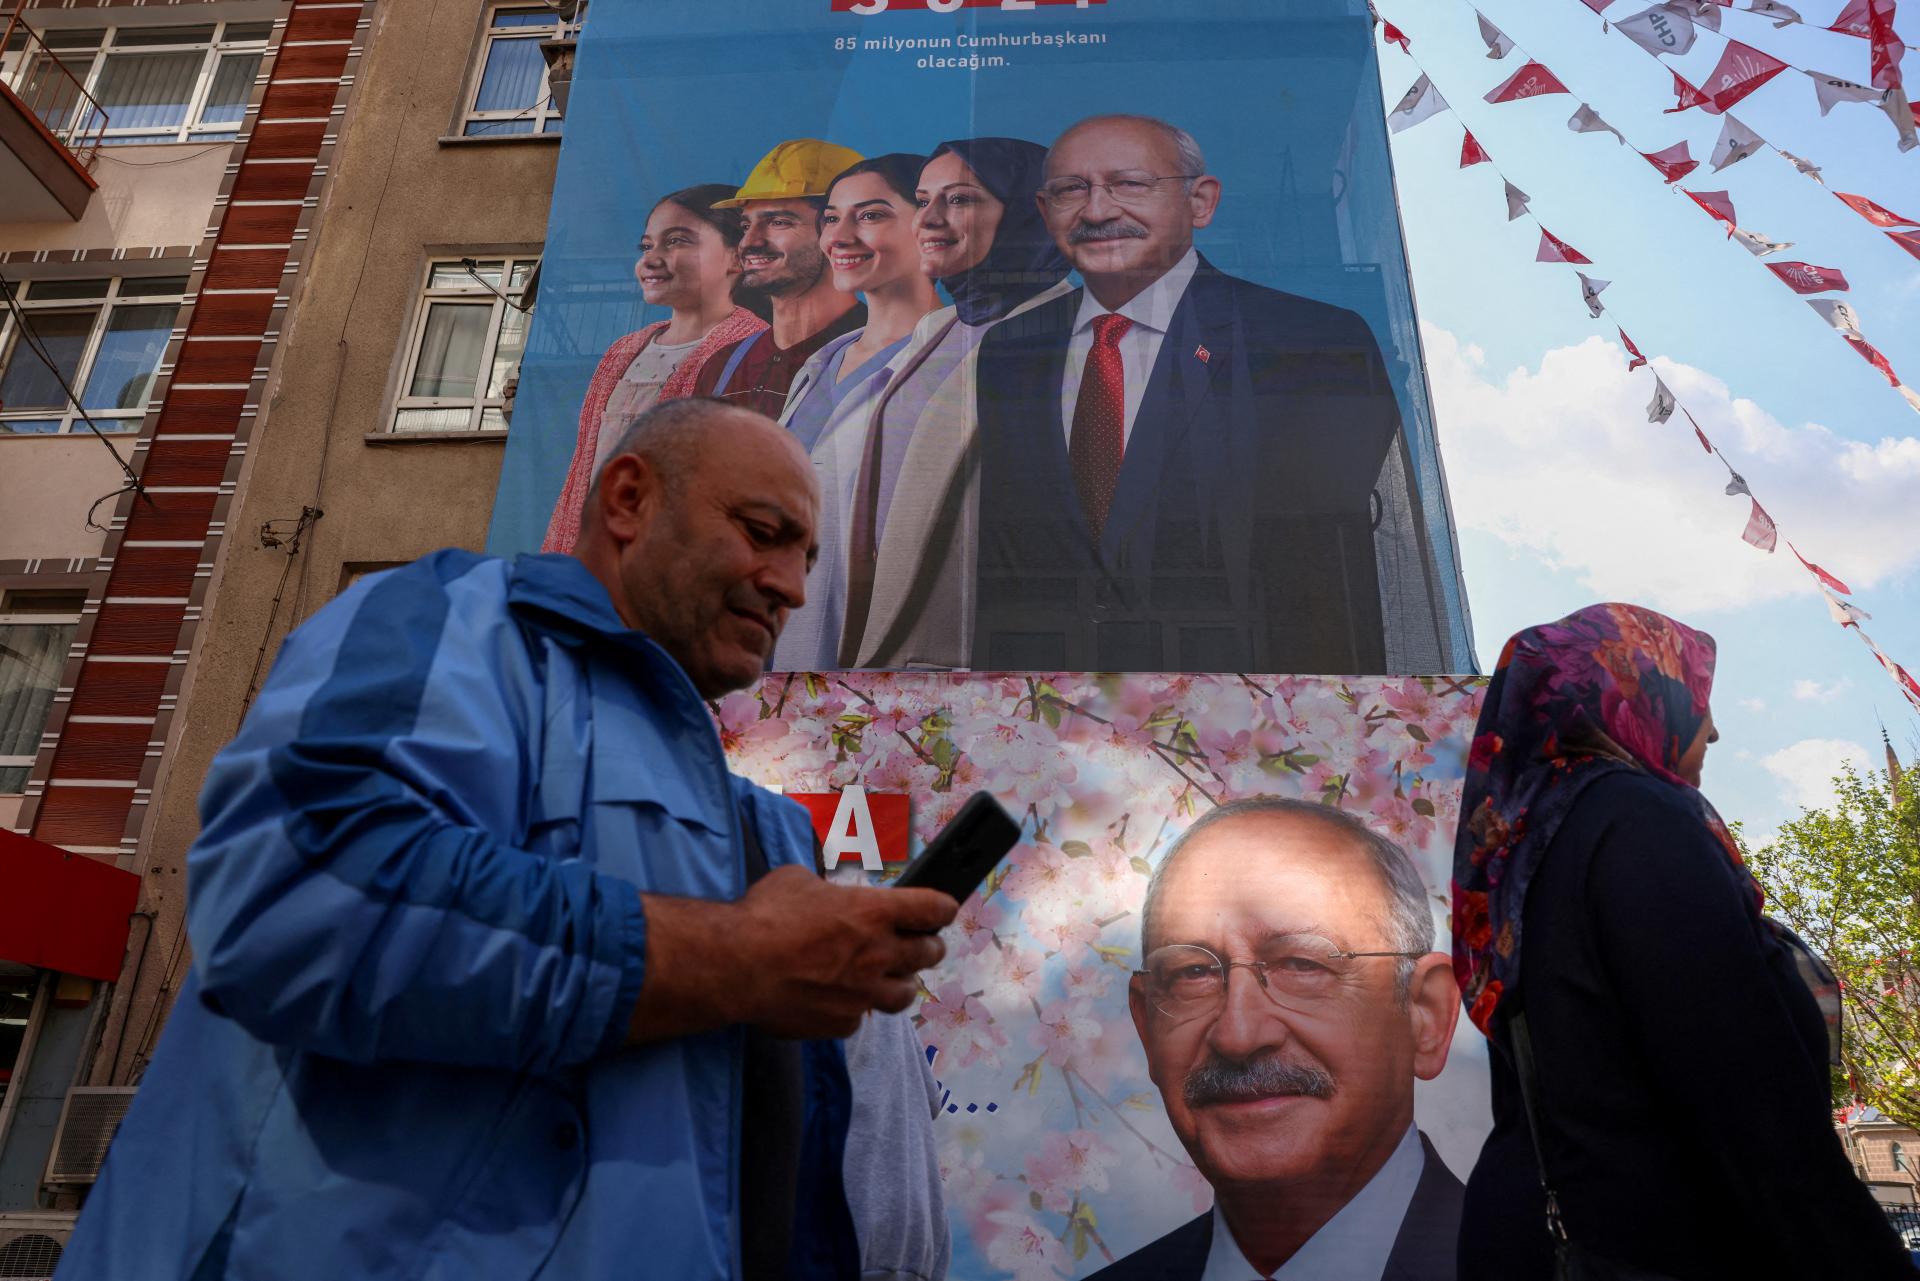 Kremeľ chce ďalej rozvíjať vzťahy s Tureckom bez ohľadu na to, kto tam vyhrá voľby